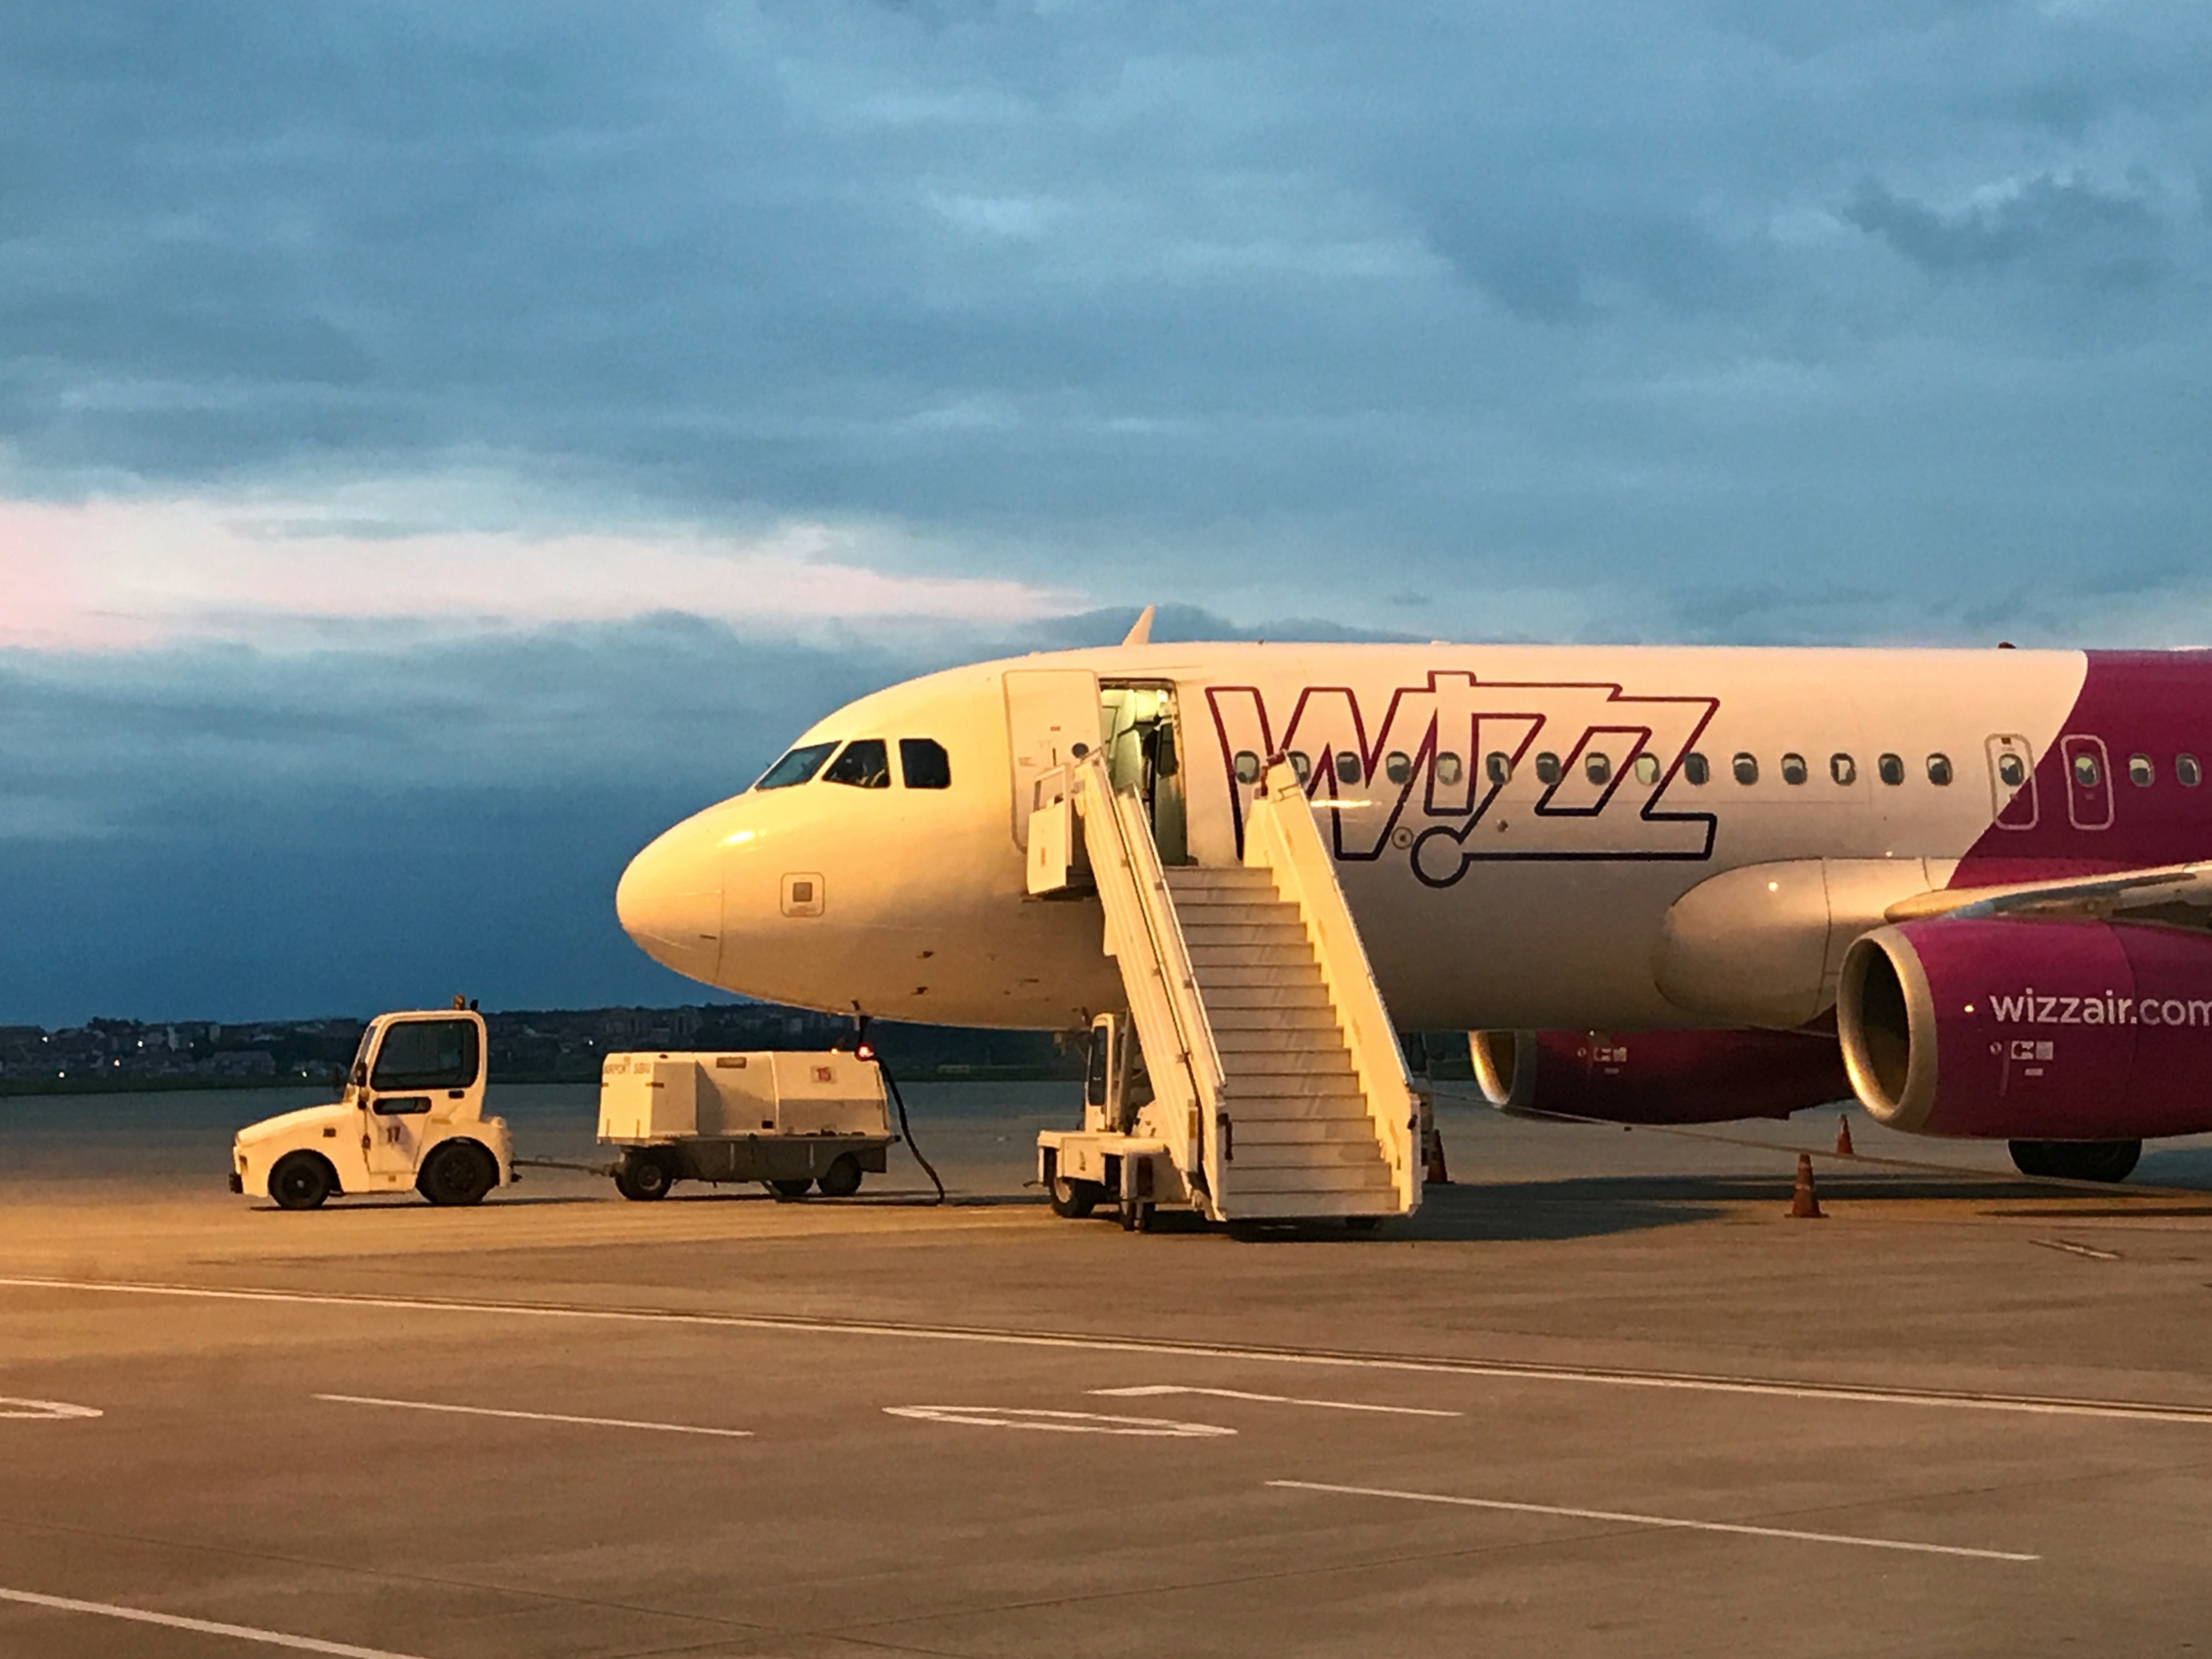 Am fost cu primul zbor Wizz Air de la Sibiu la Tel Aviv și am descoperit o țară magnifică